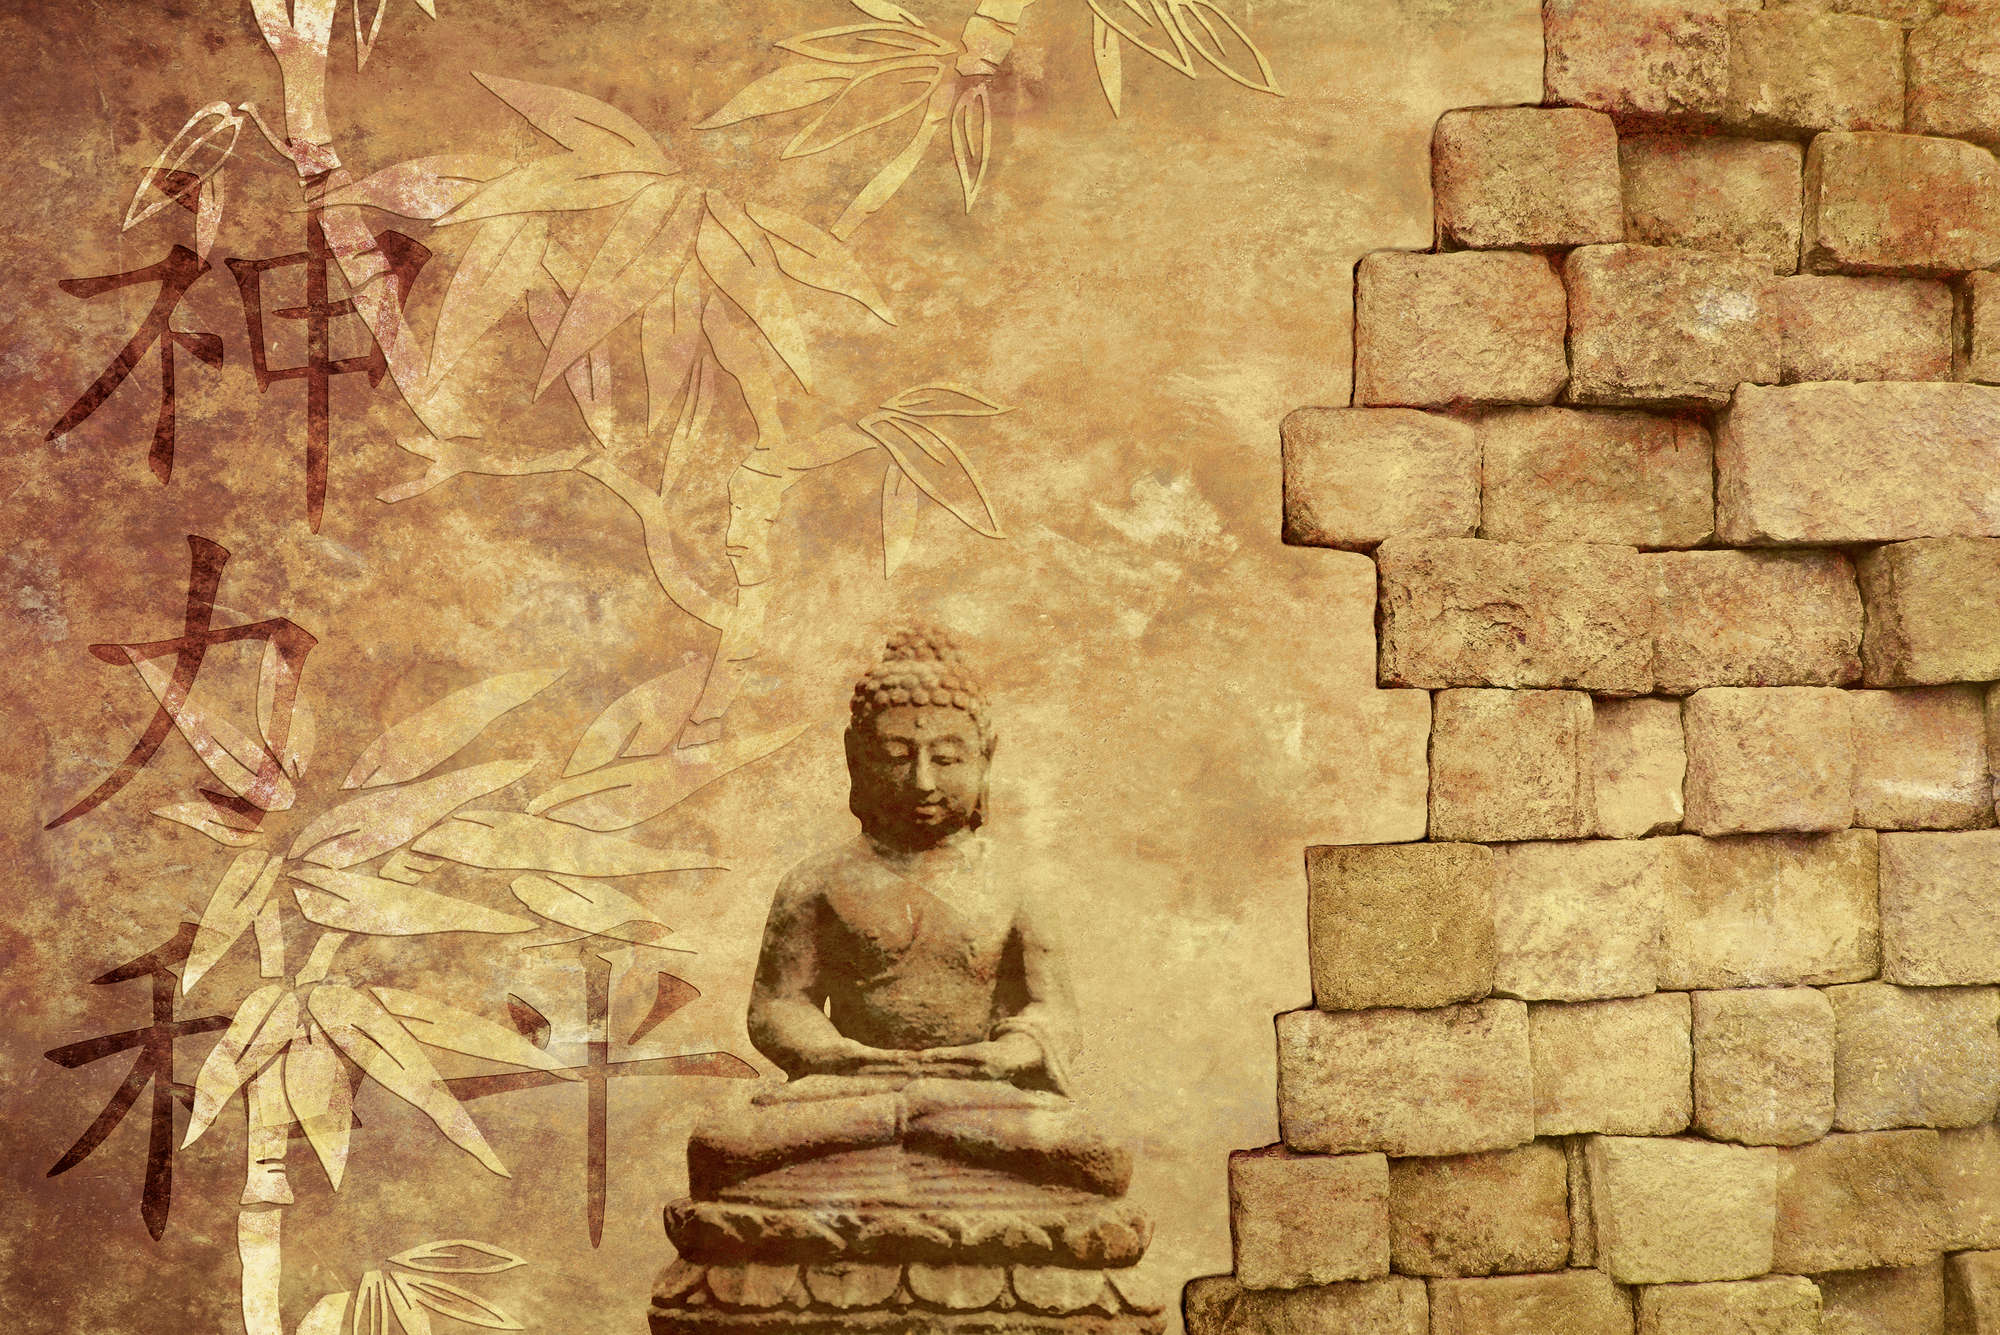             Digital behang met Boeddha figuur - Premium glad vlies
        